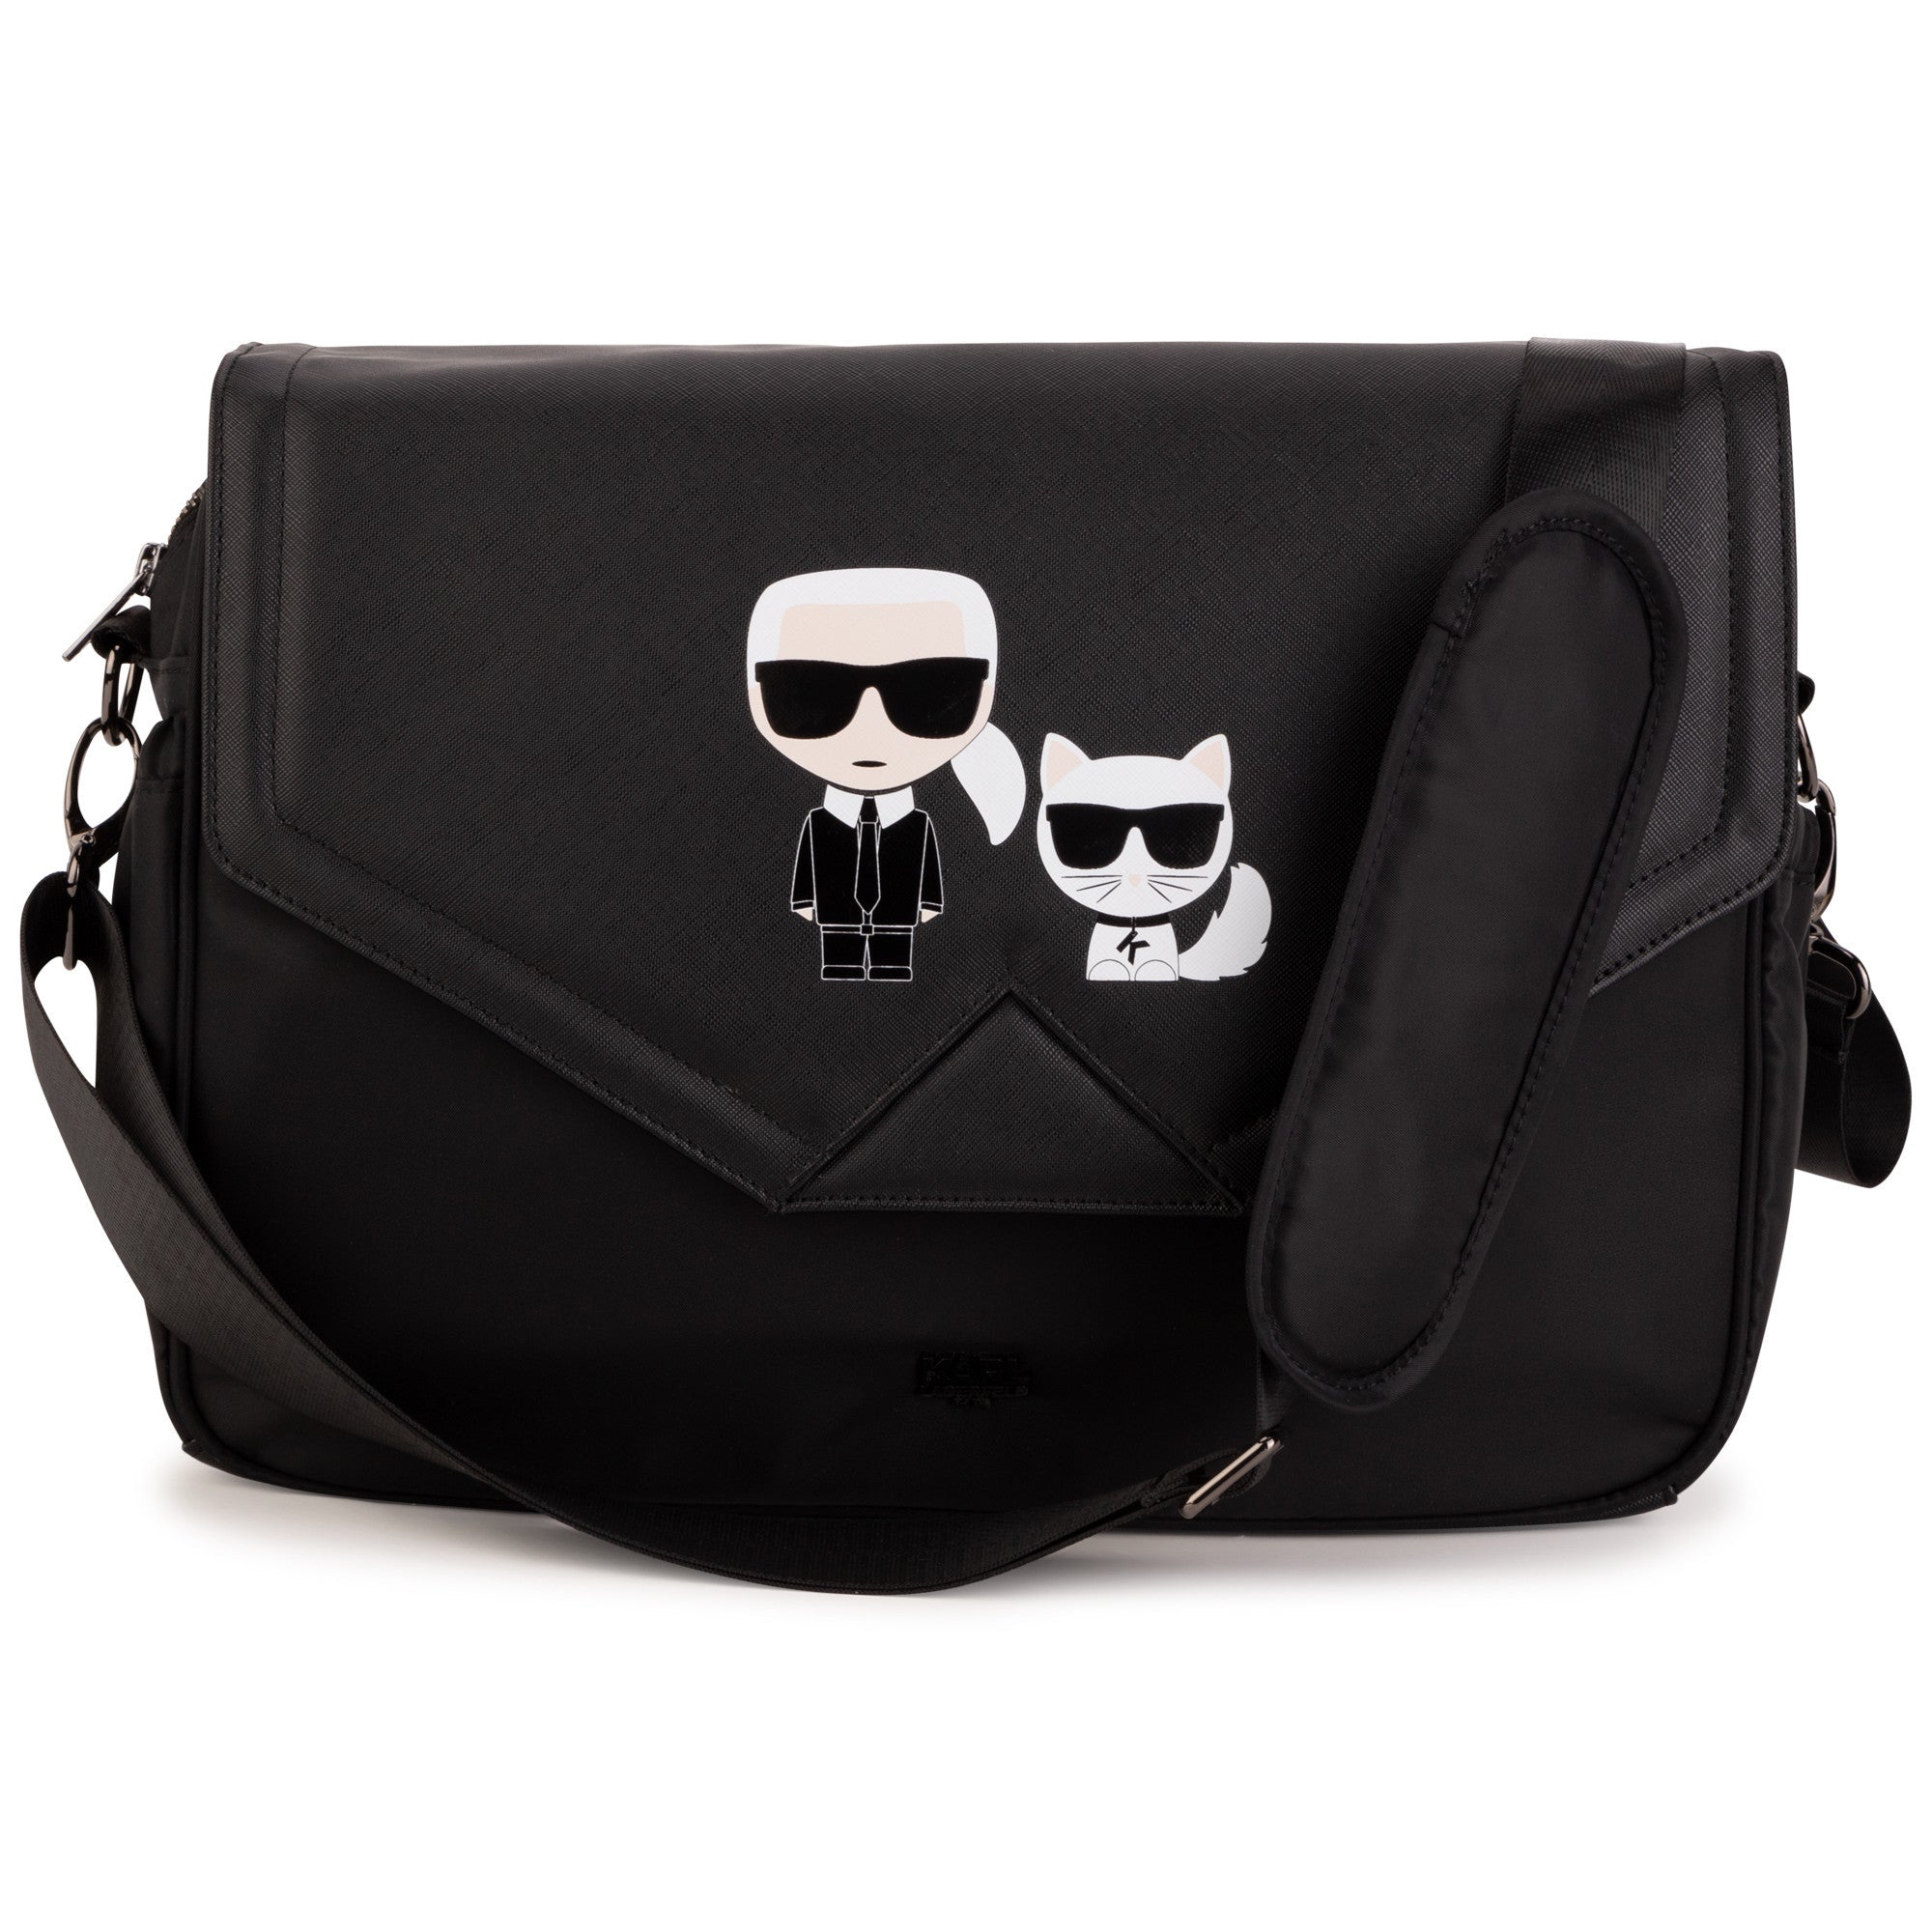 Karl Lagerfeld Baby Bag